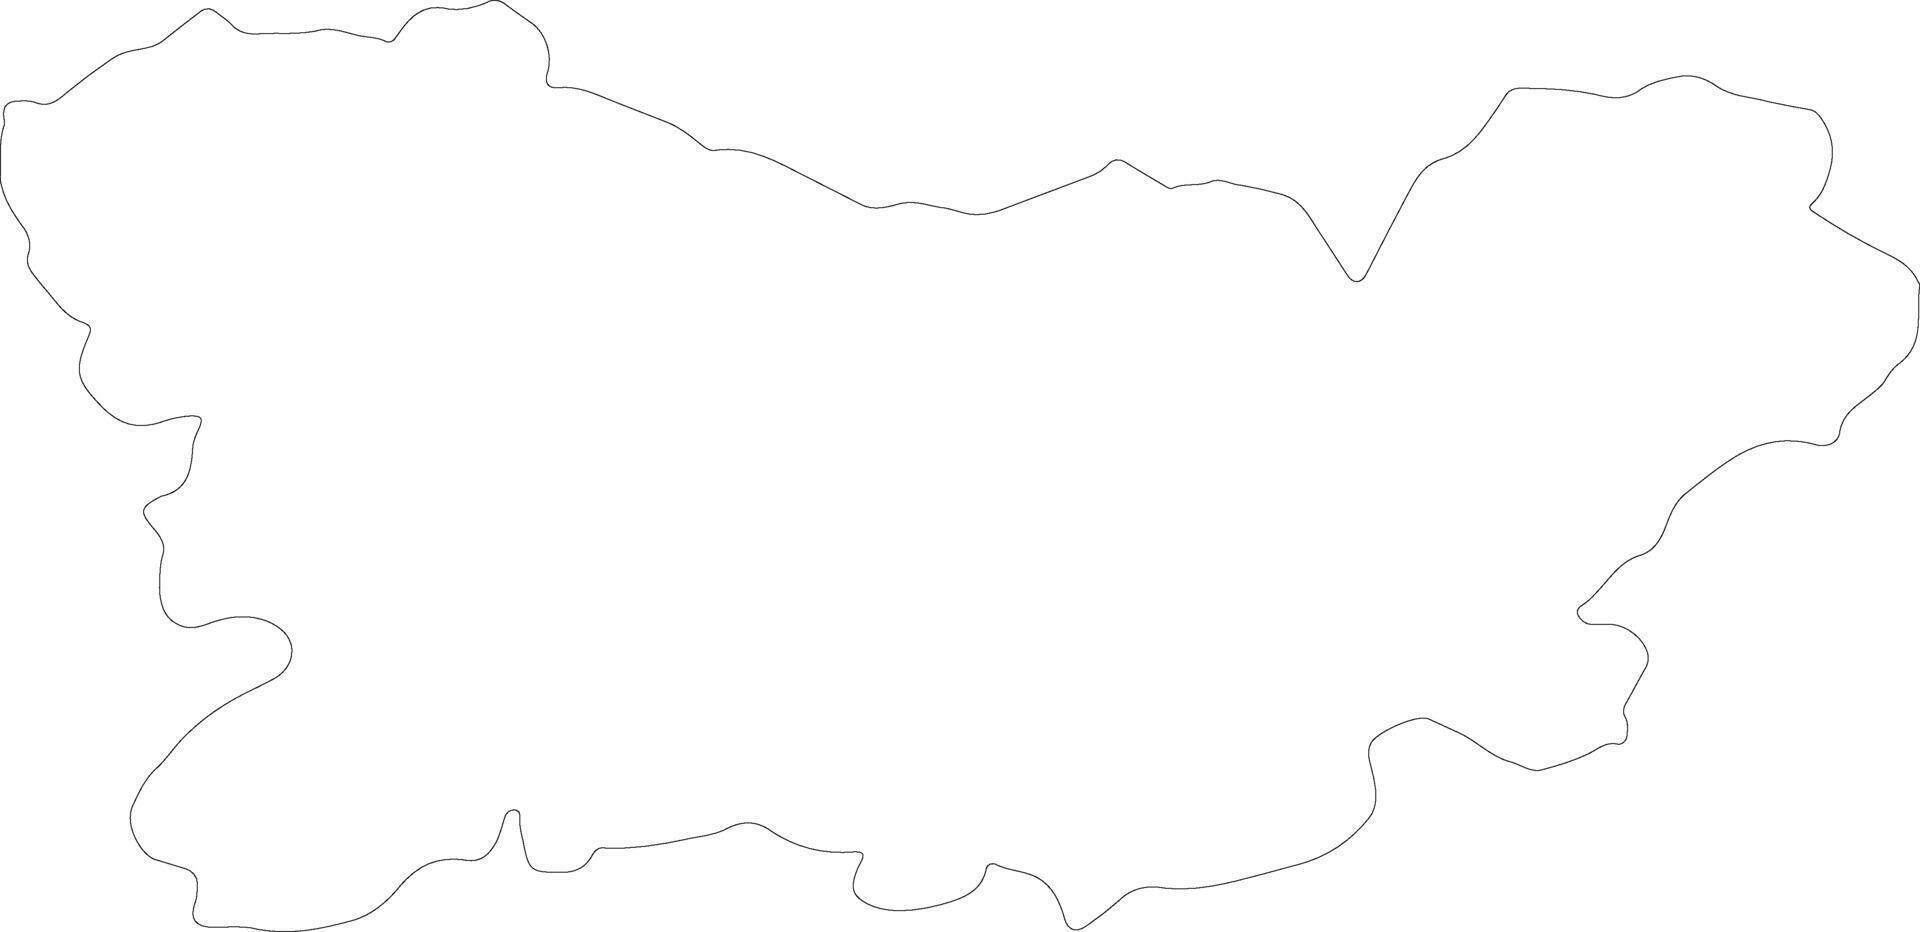 Orense Spain outline map vector